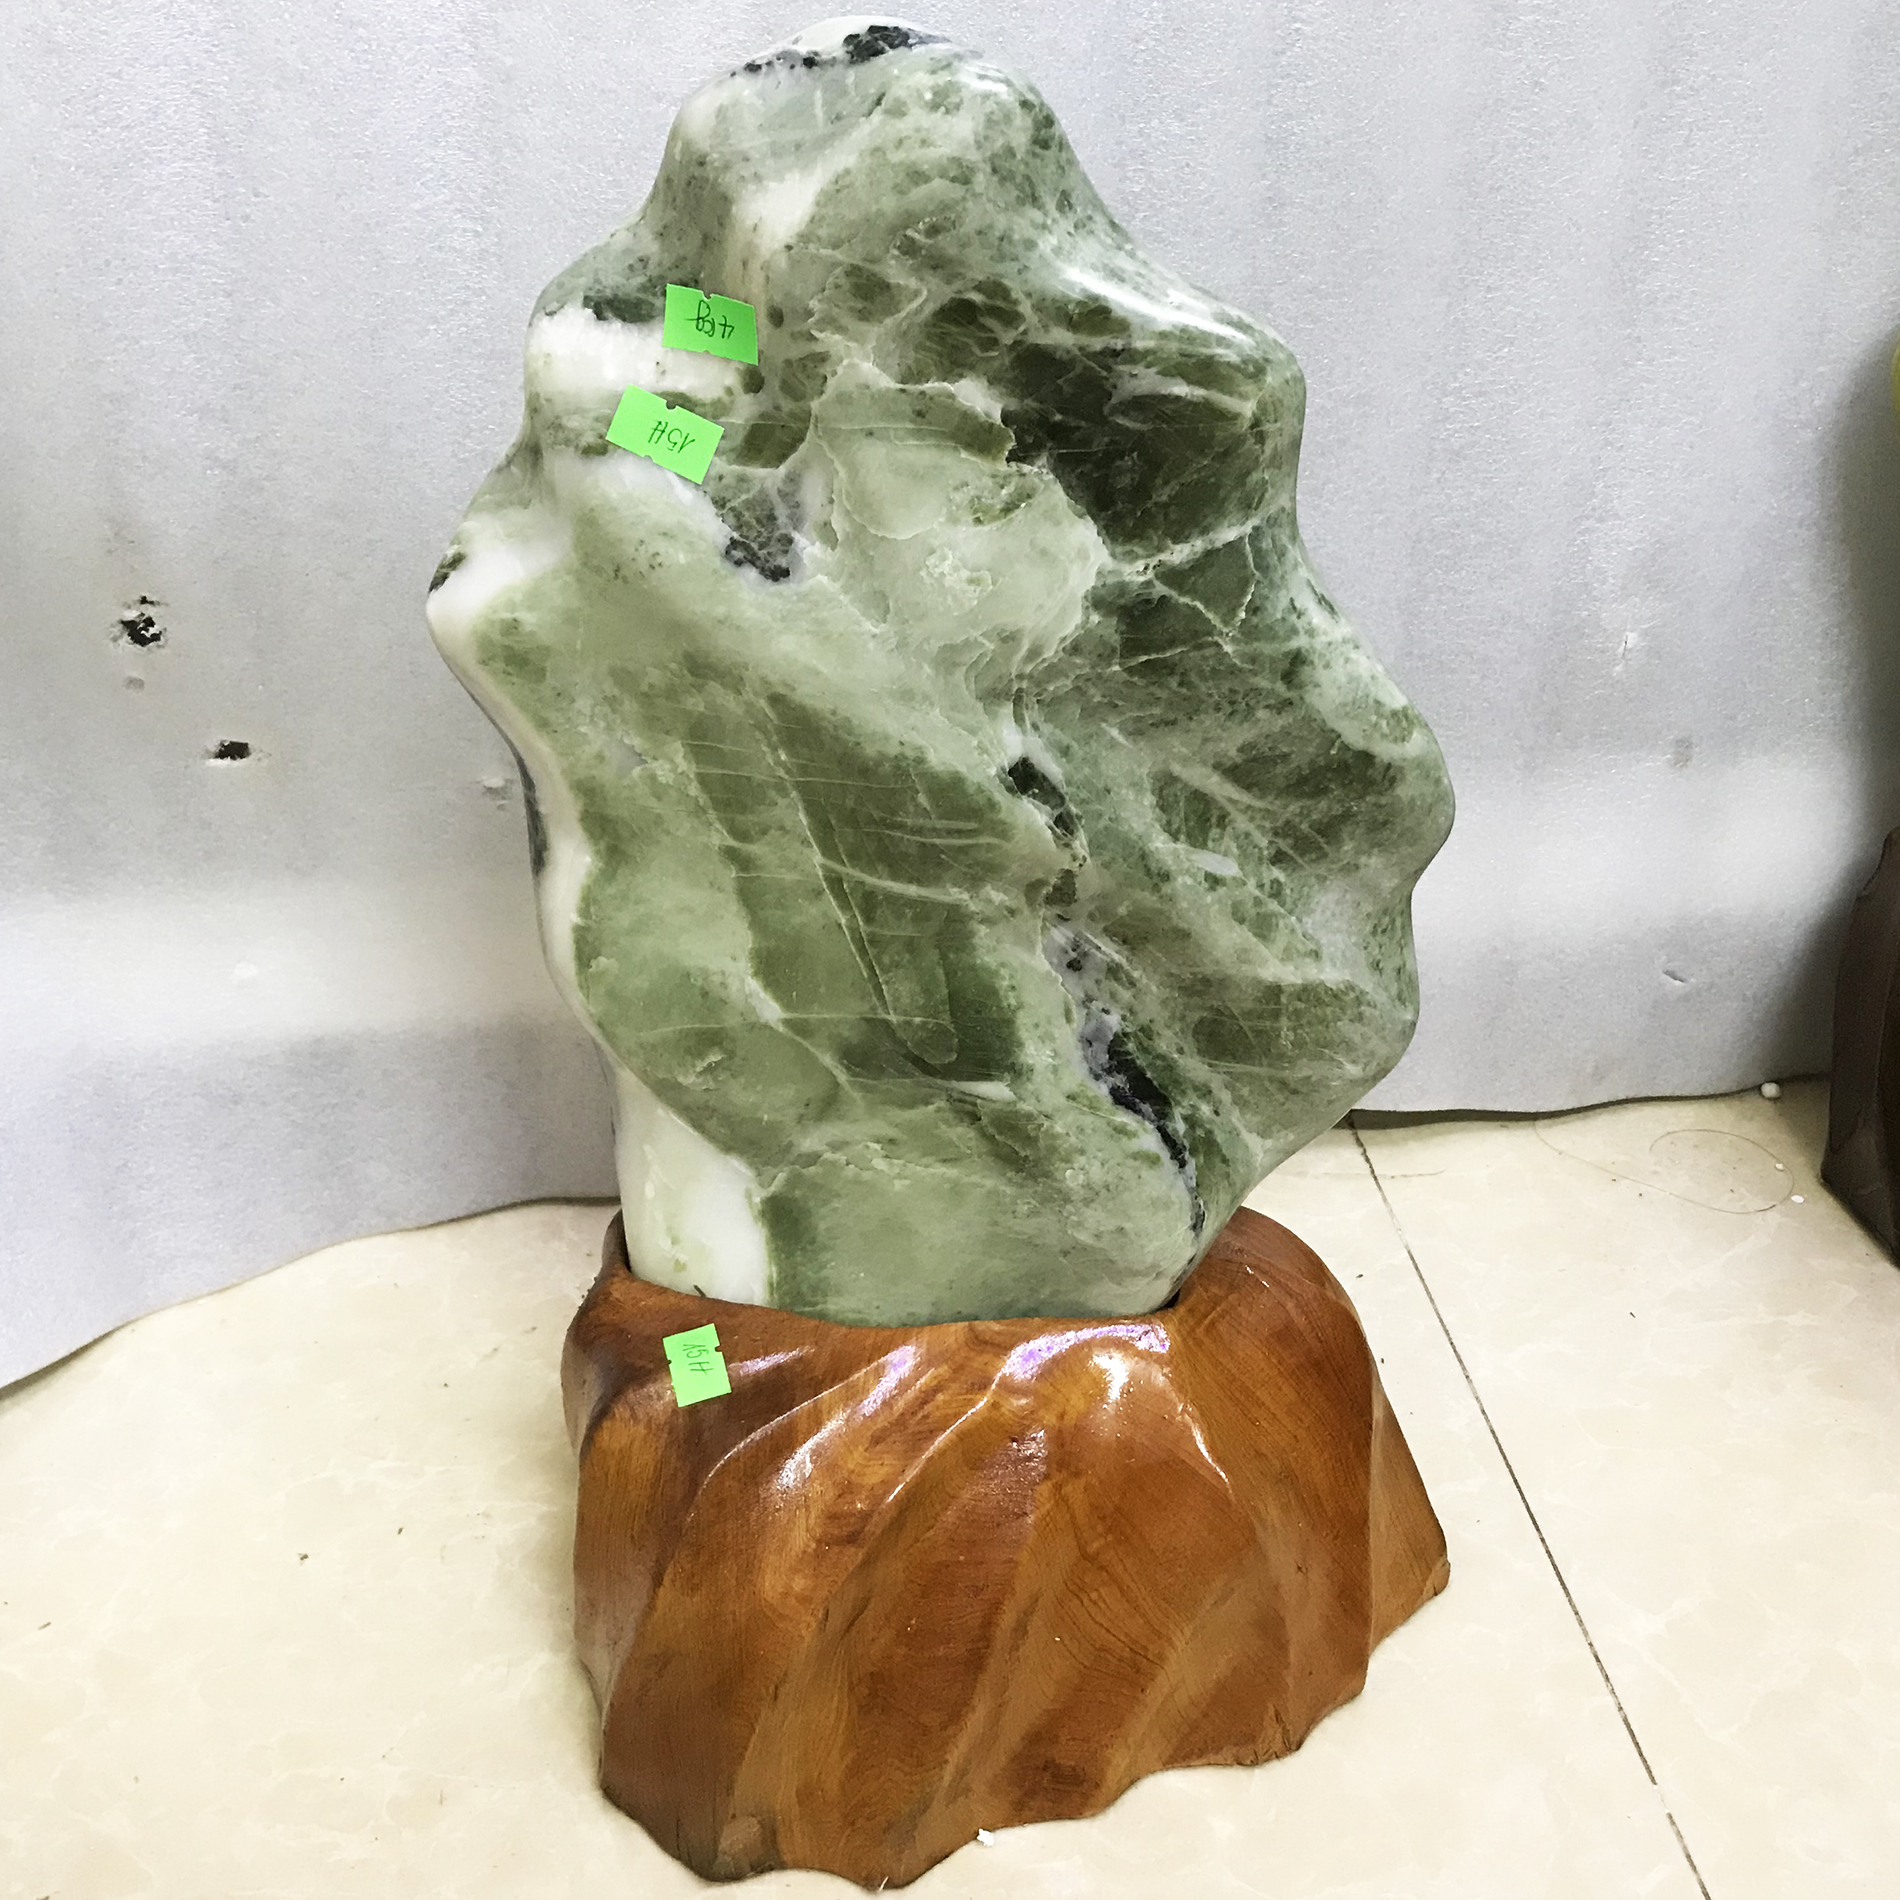 Cây đá phong thủy tự nhiên cao 40cm nặng 7kg chất ngọc serpentine xanh đậm cho mệnh Hỏa và Mộc